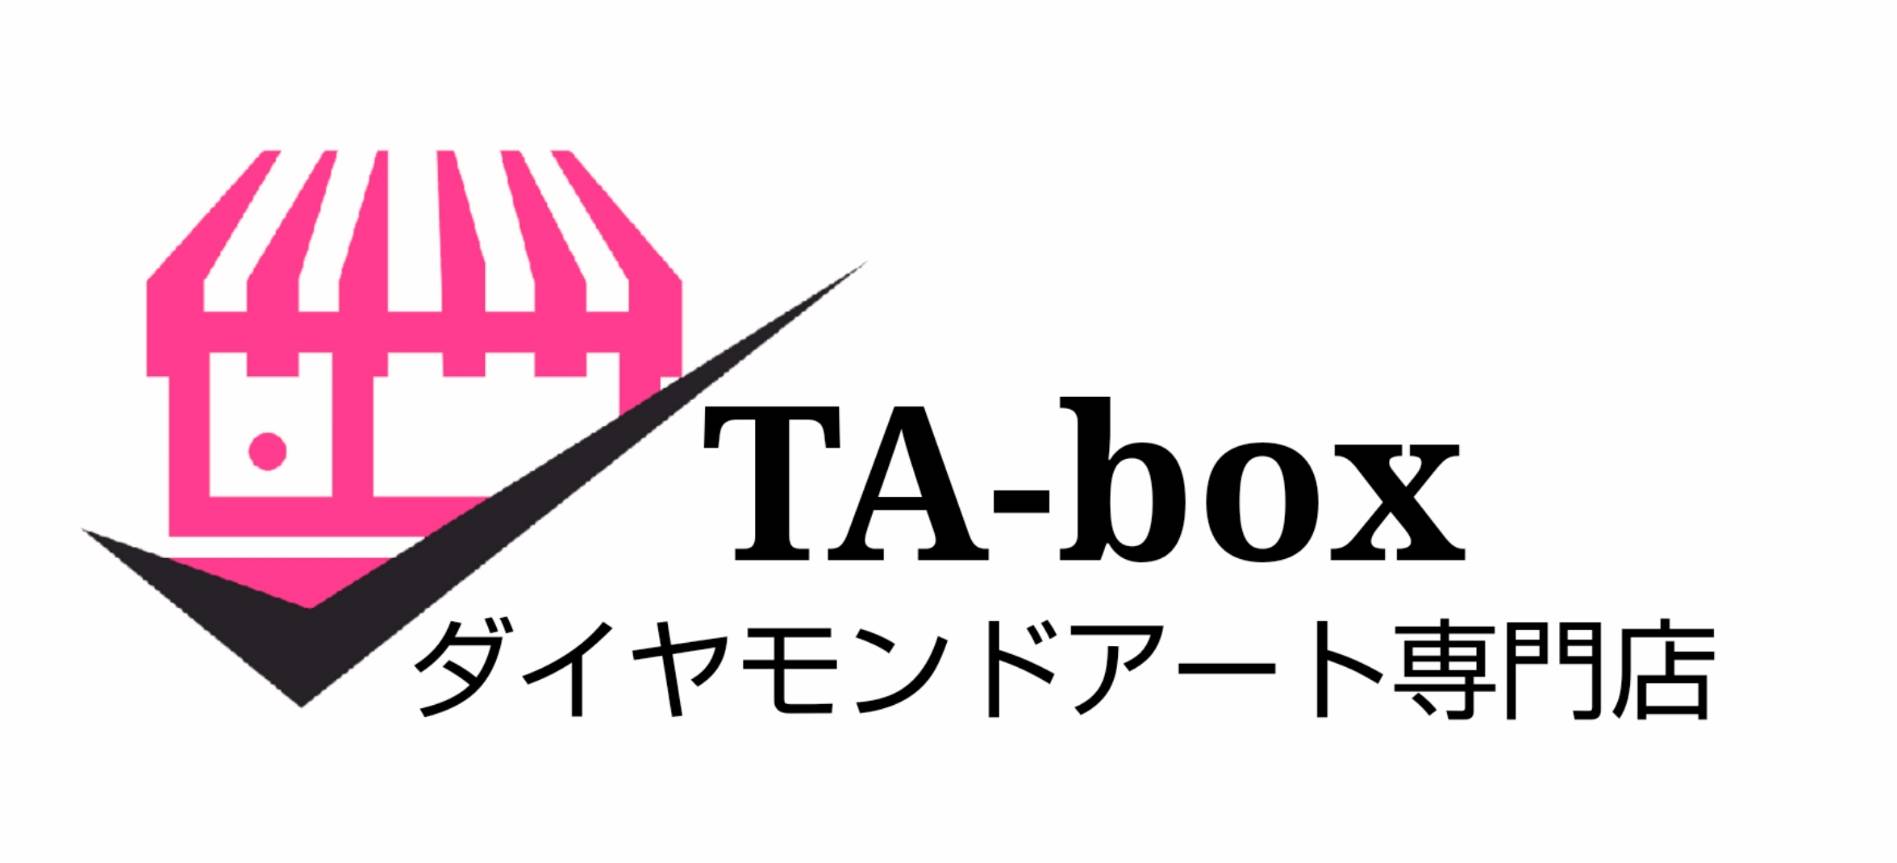 ダイアモンドアート専門店 TA-box